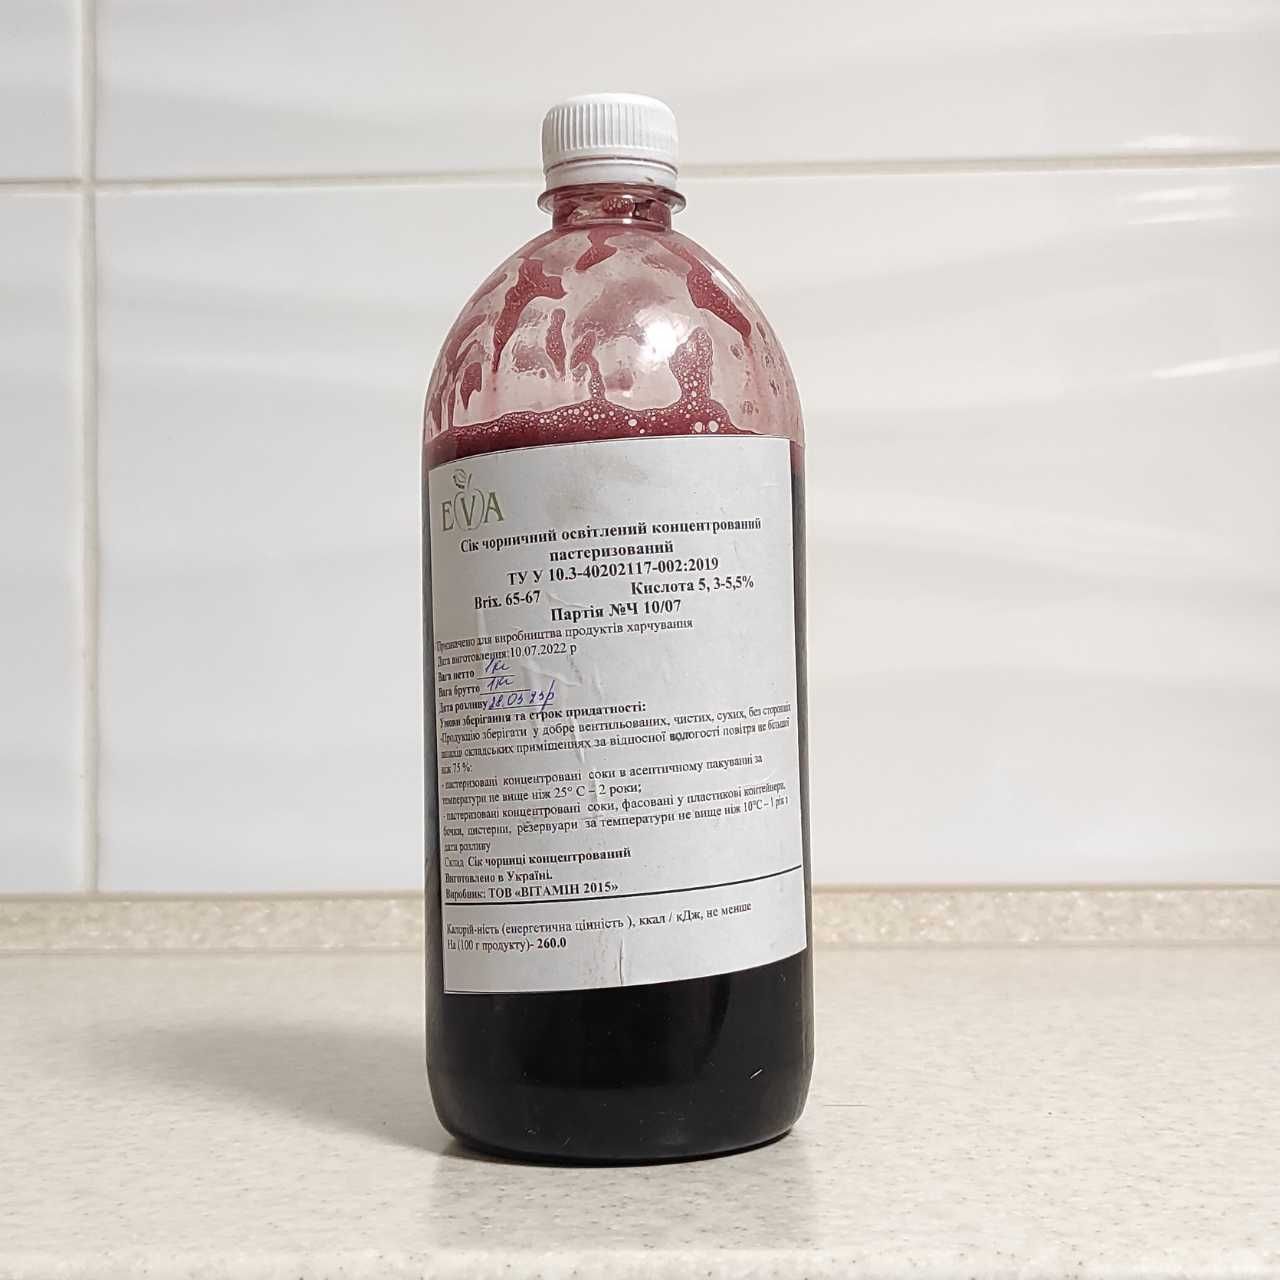 Концентрированный черничный сок (65-67 ВХ) бутылка 1 кг / 0,76 л